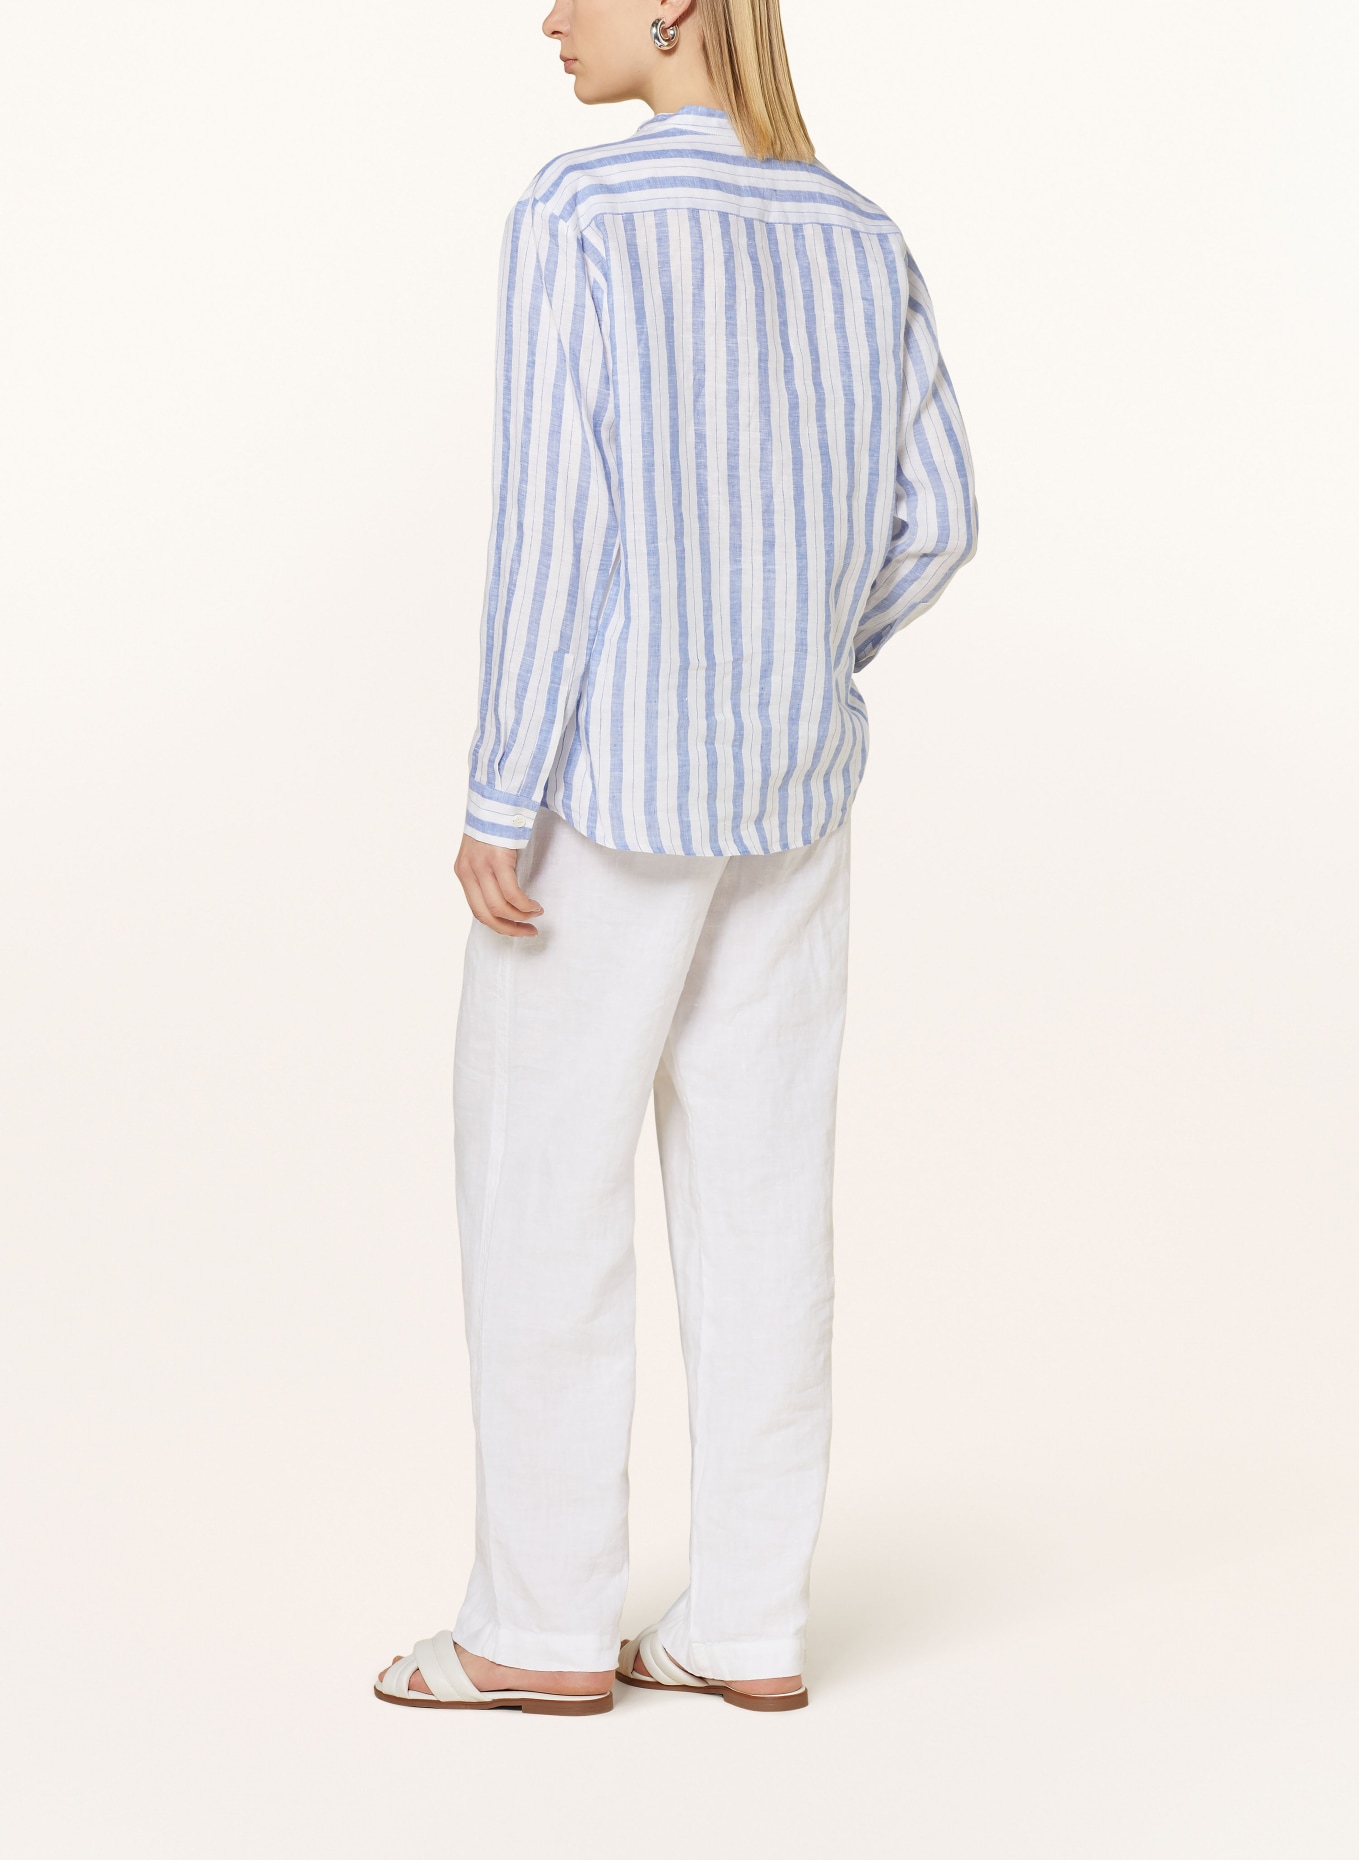 seidensticker Shirt blouse made of linen, Color: LIGHT BLUE/ WHITE (Image 3)